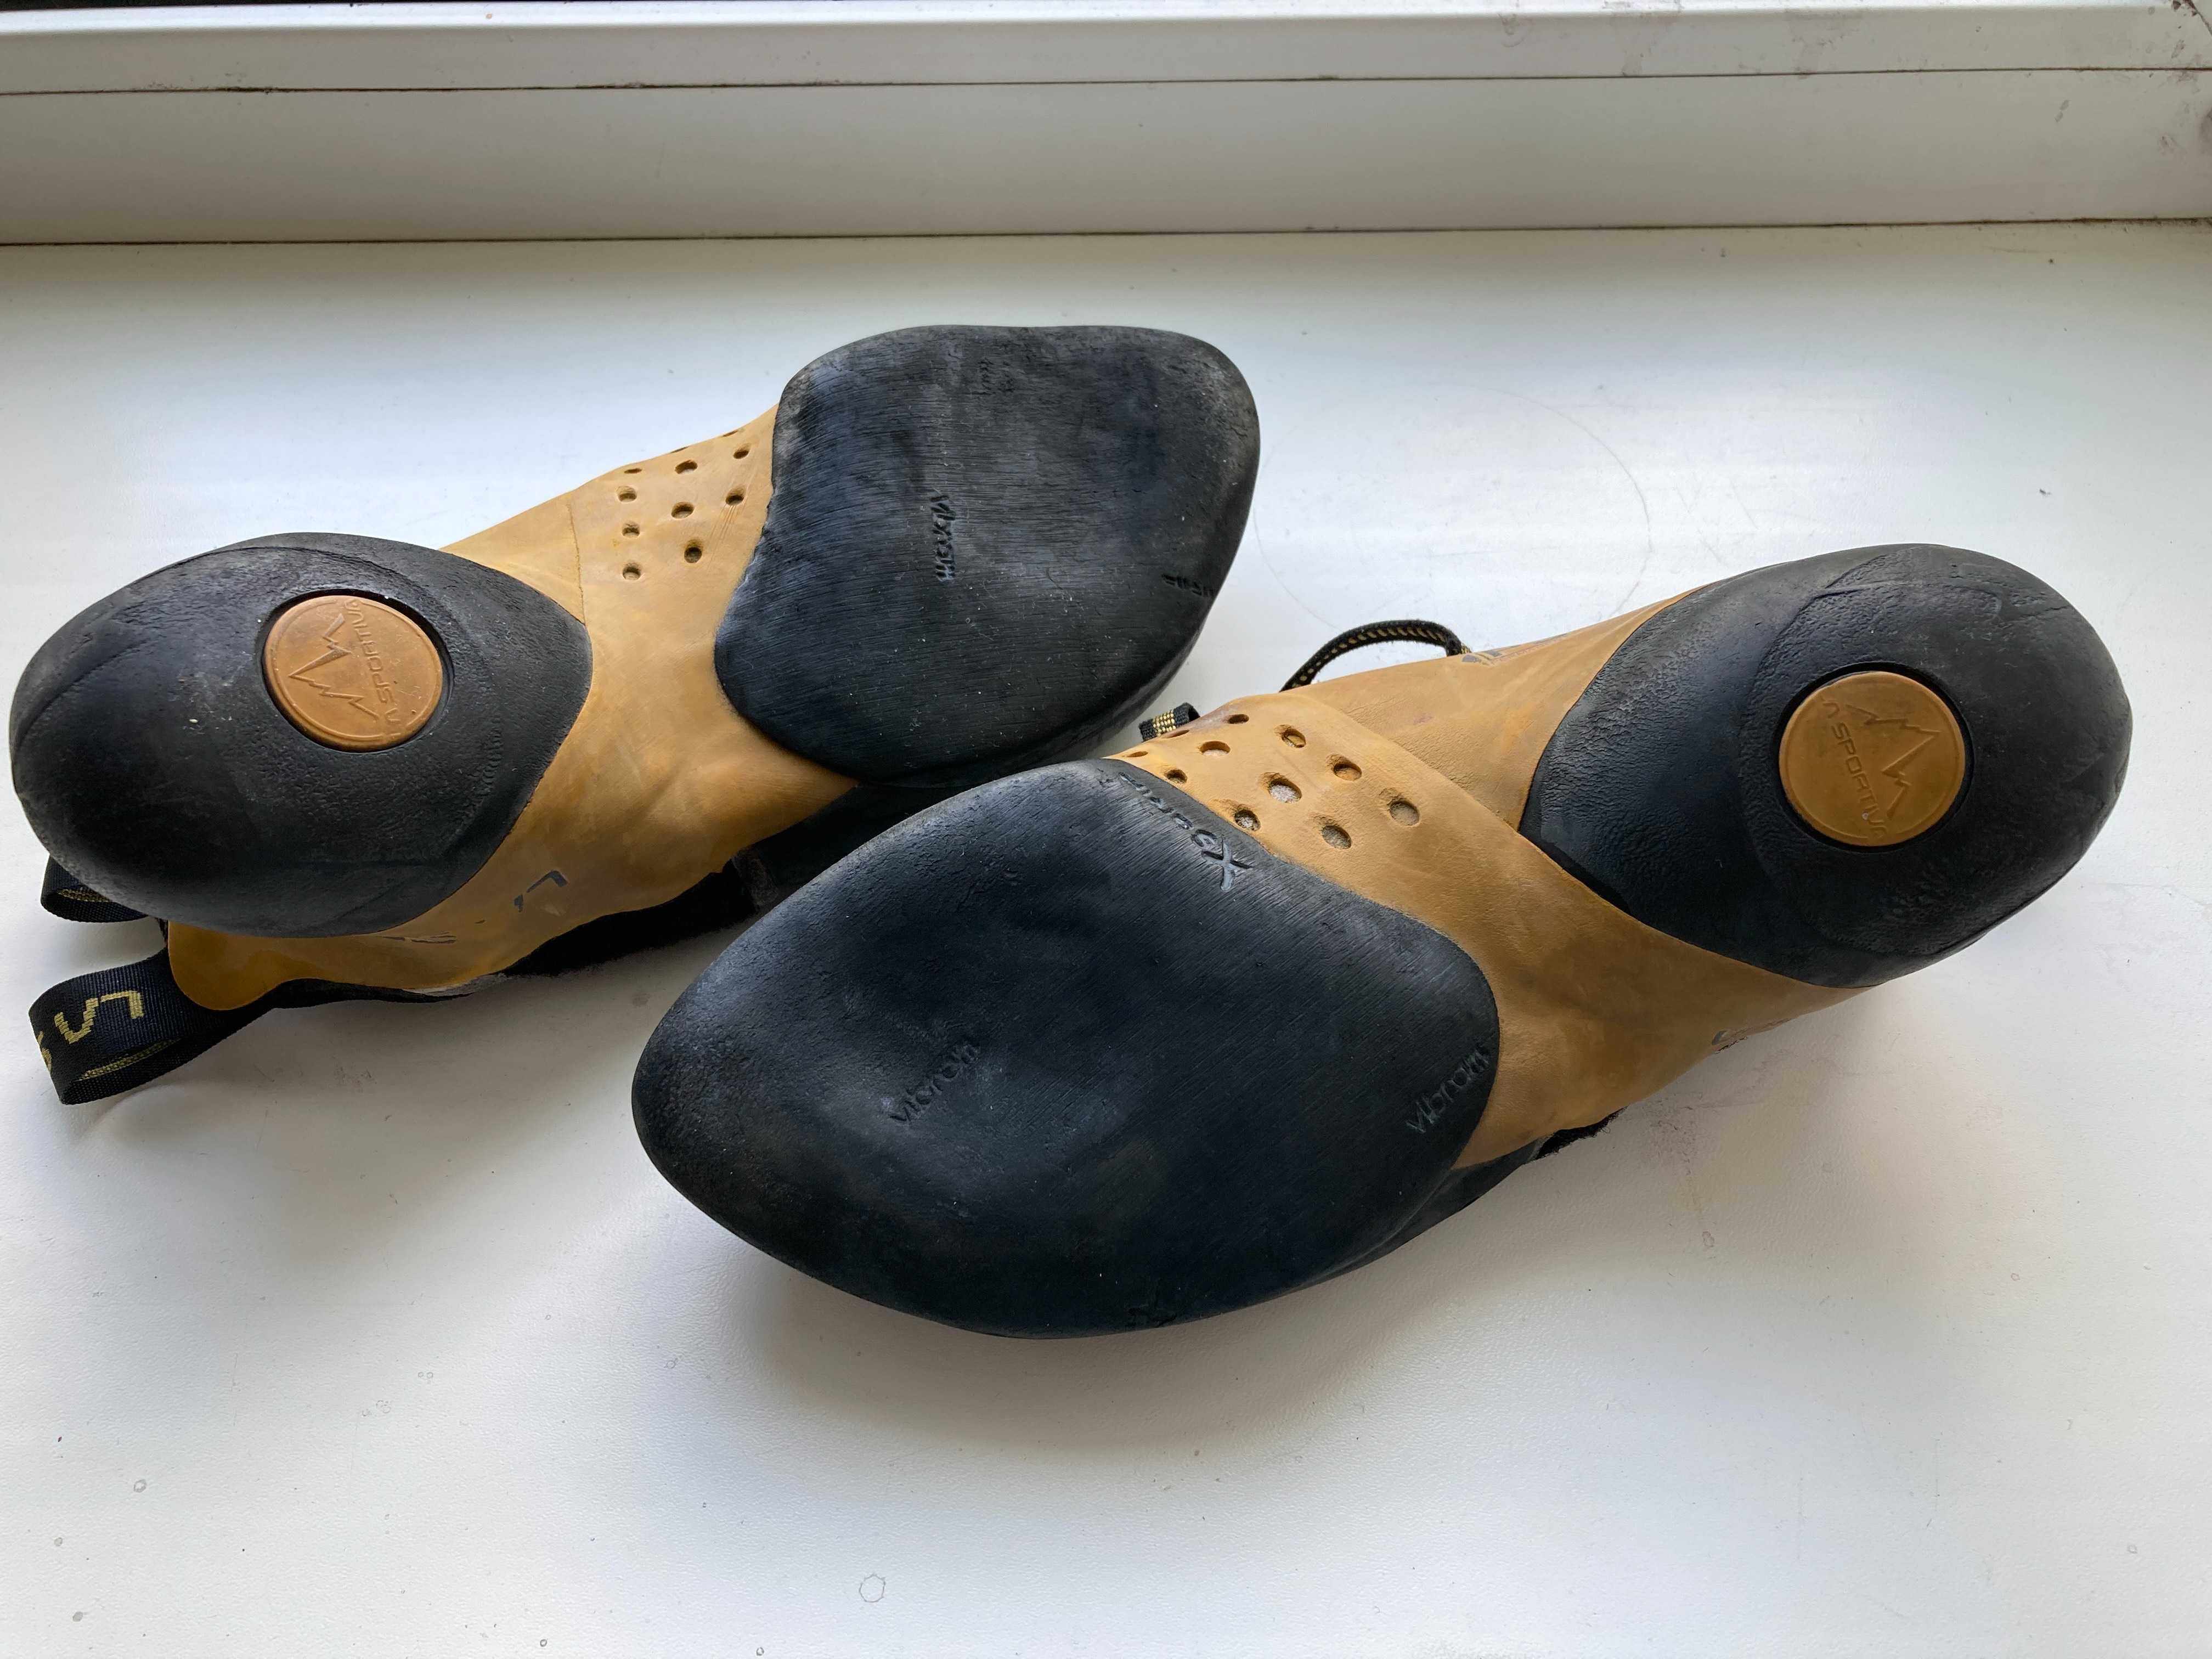 скальные туфли, скальники LaSportiva Solution